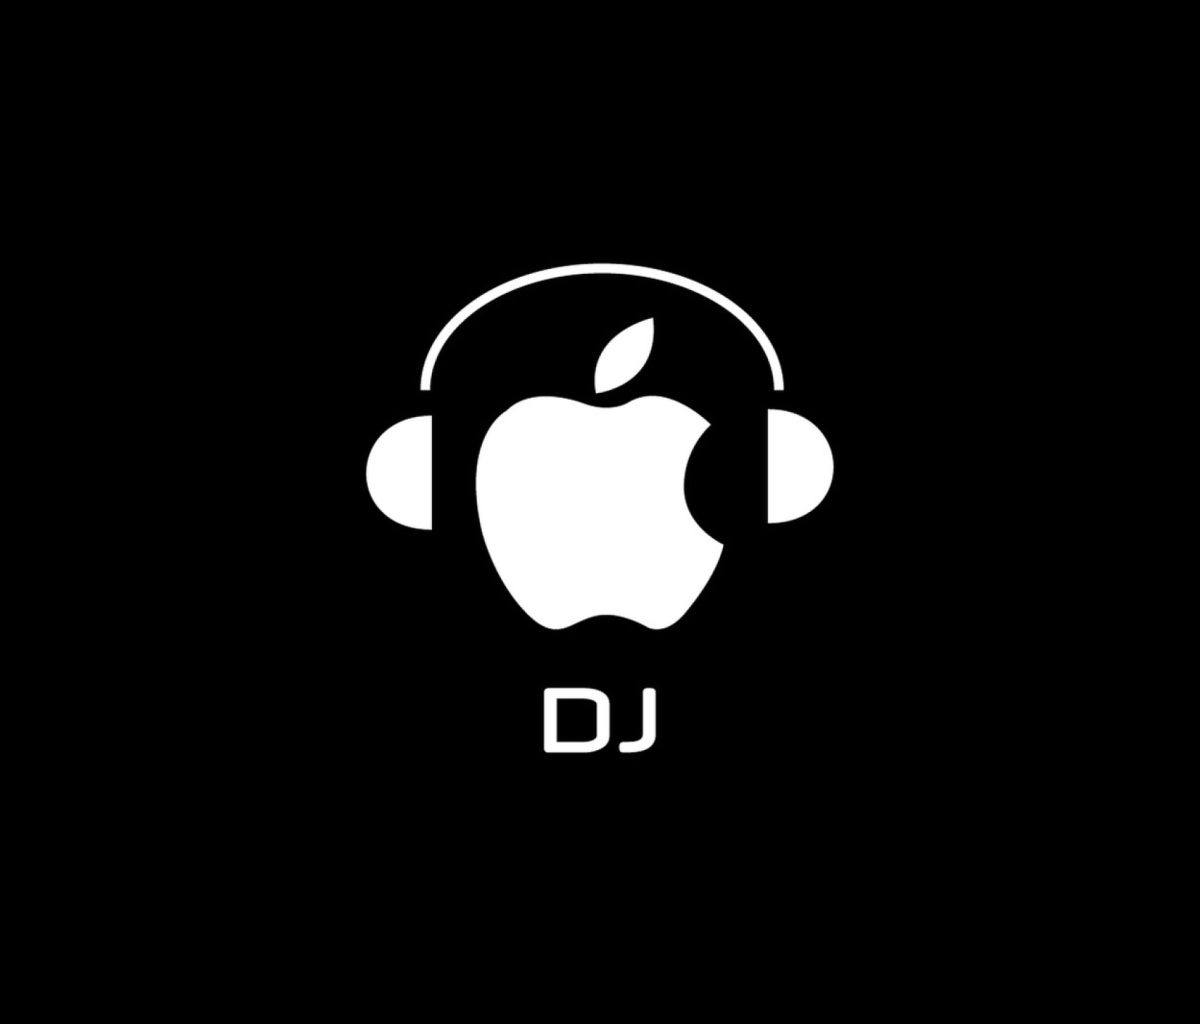 Apple DJ wallpaper 1200x1024